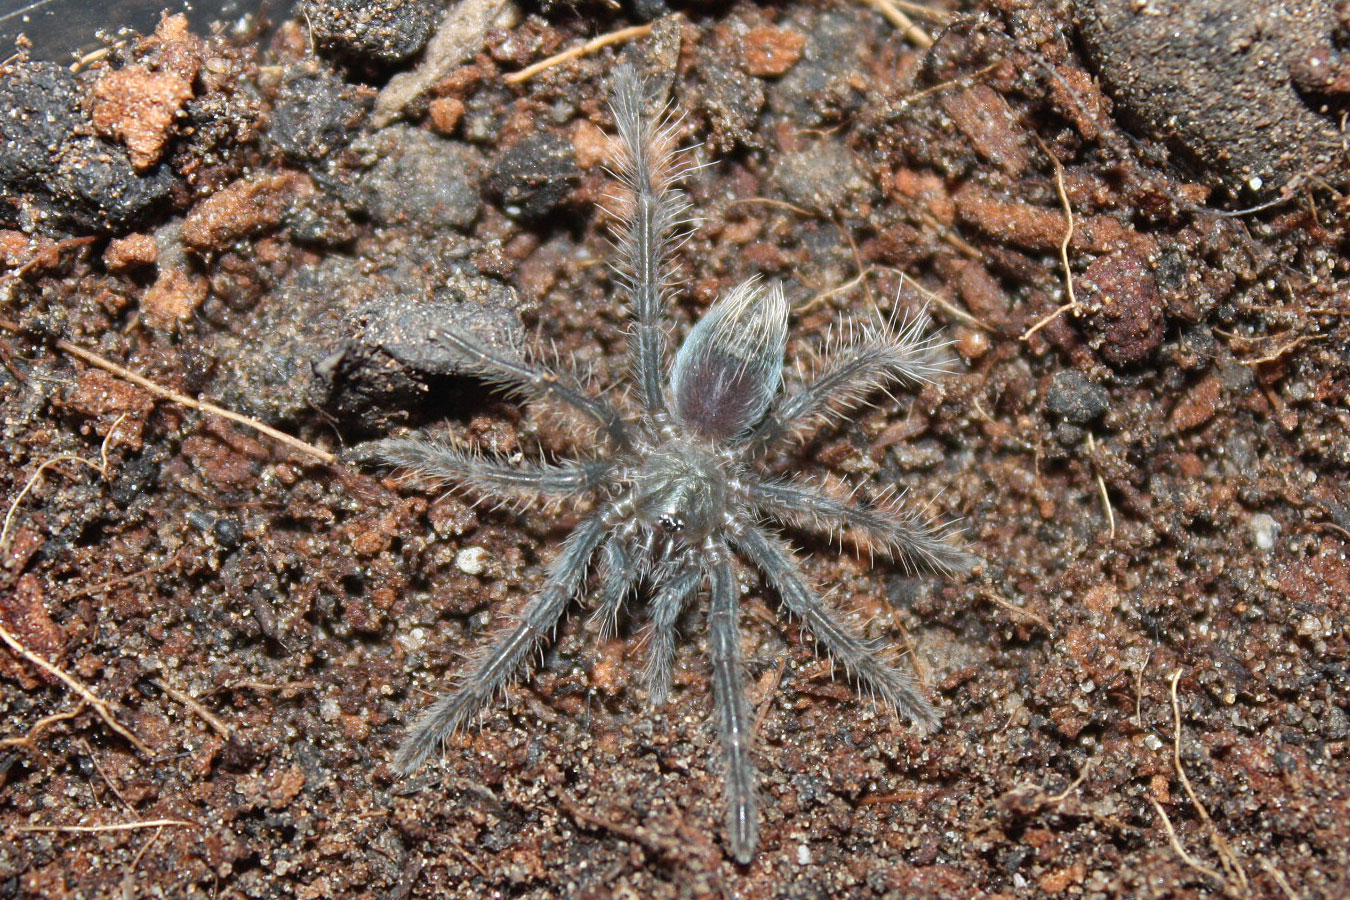 Phormictopus auratus (1.5cm)